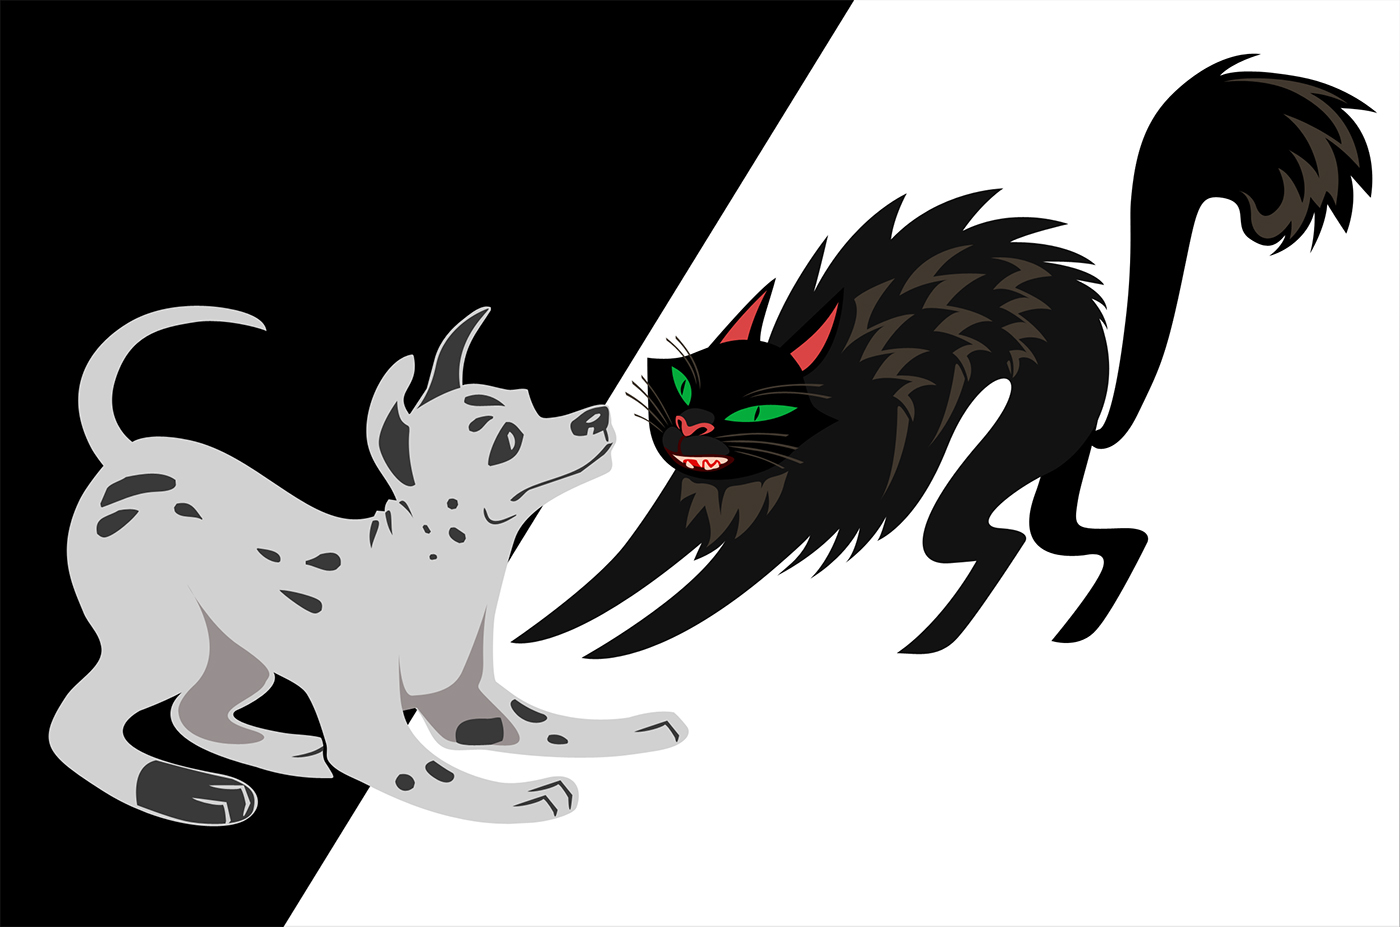 animals cartoon Character design  conjoined twins Digital Art  digital illustration ILLUSTRATION  parrots spooky vampire